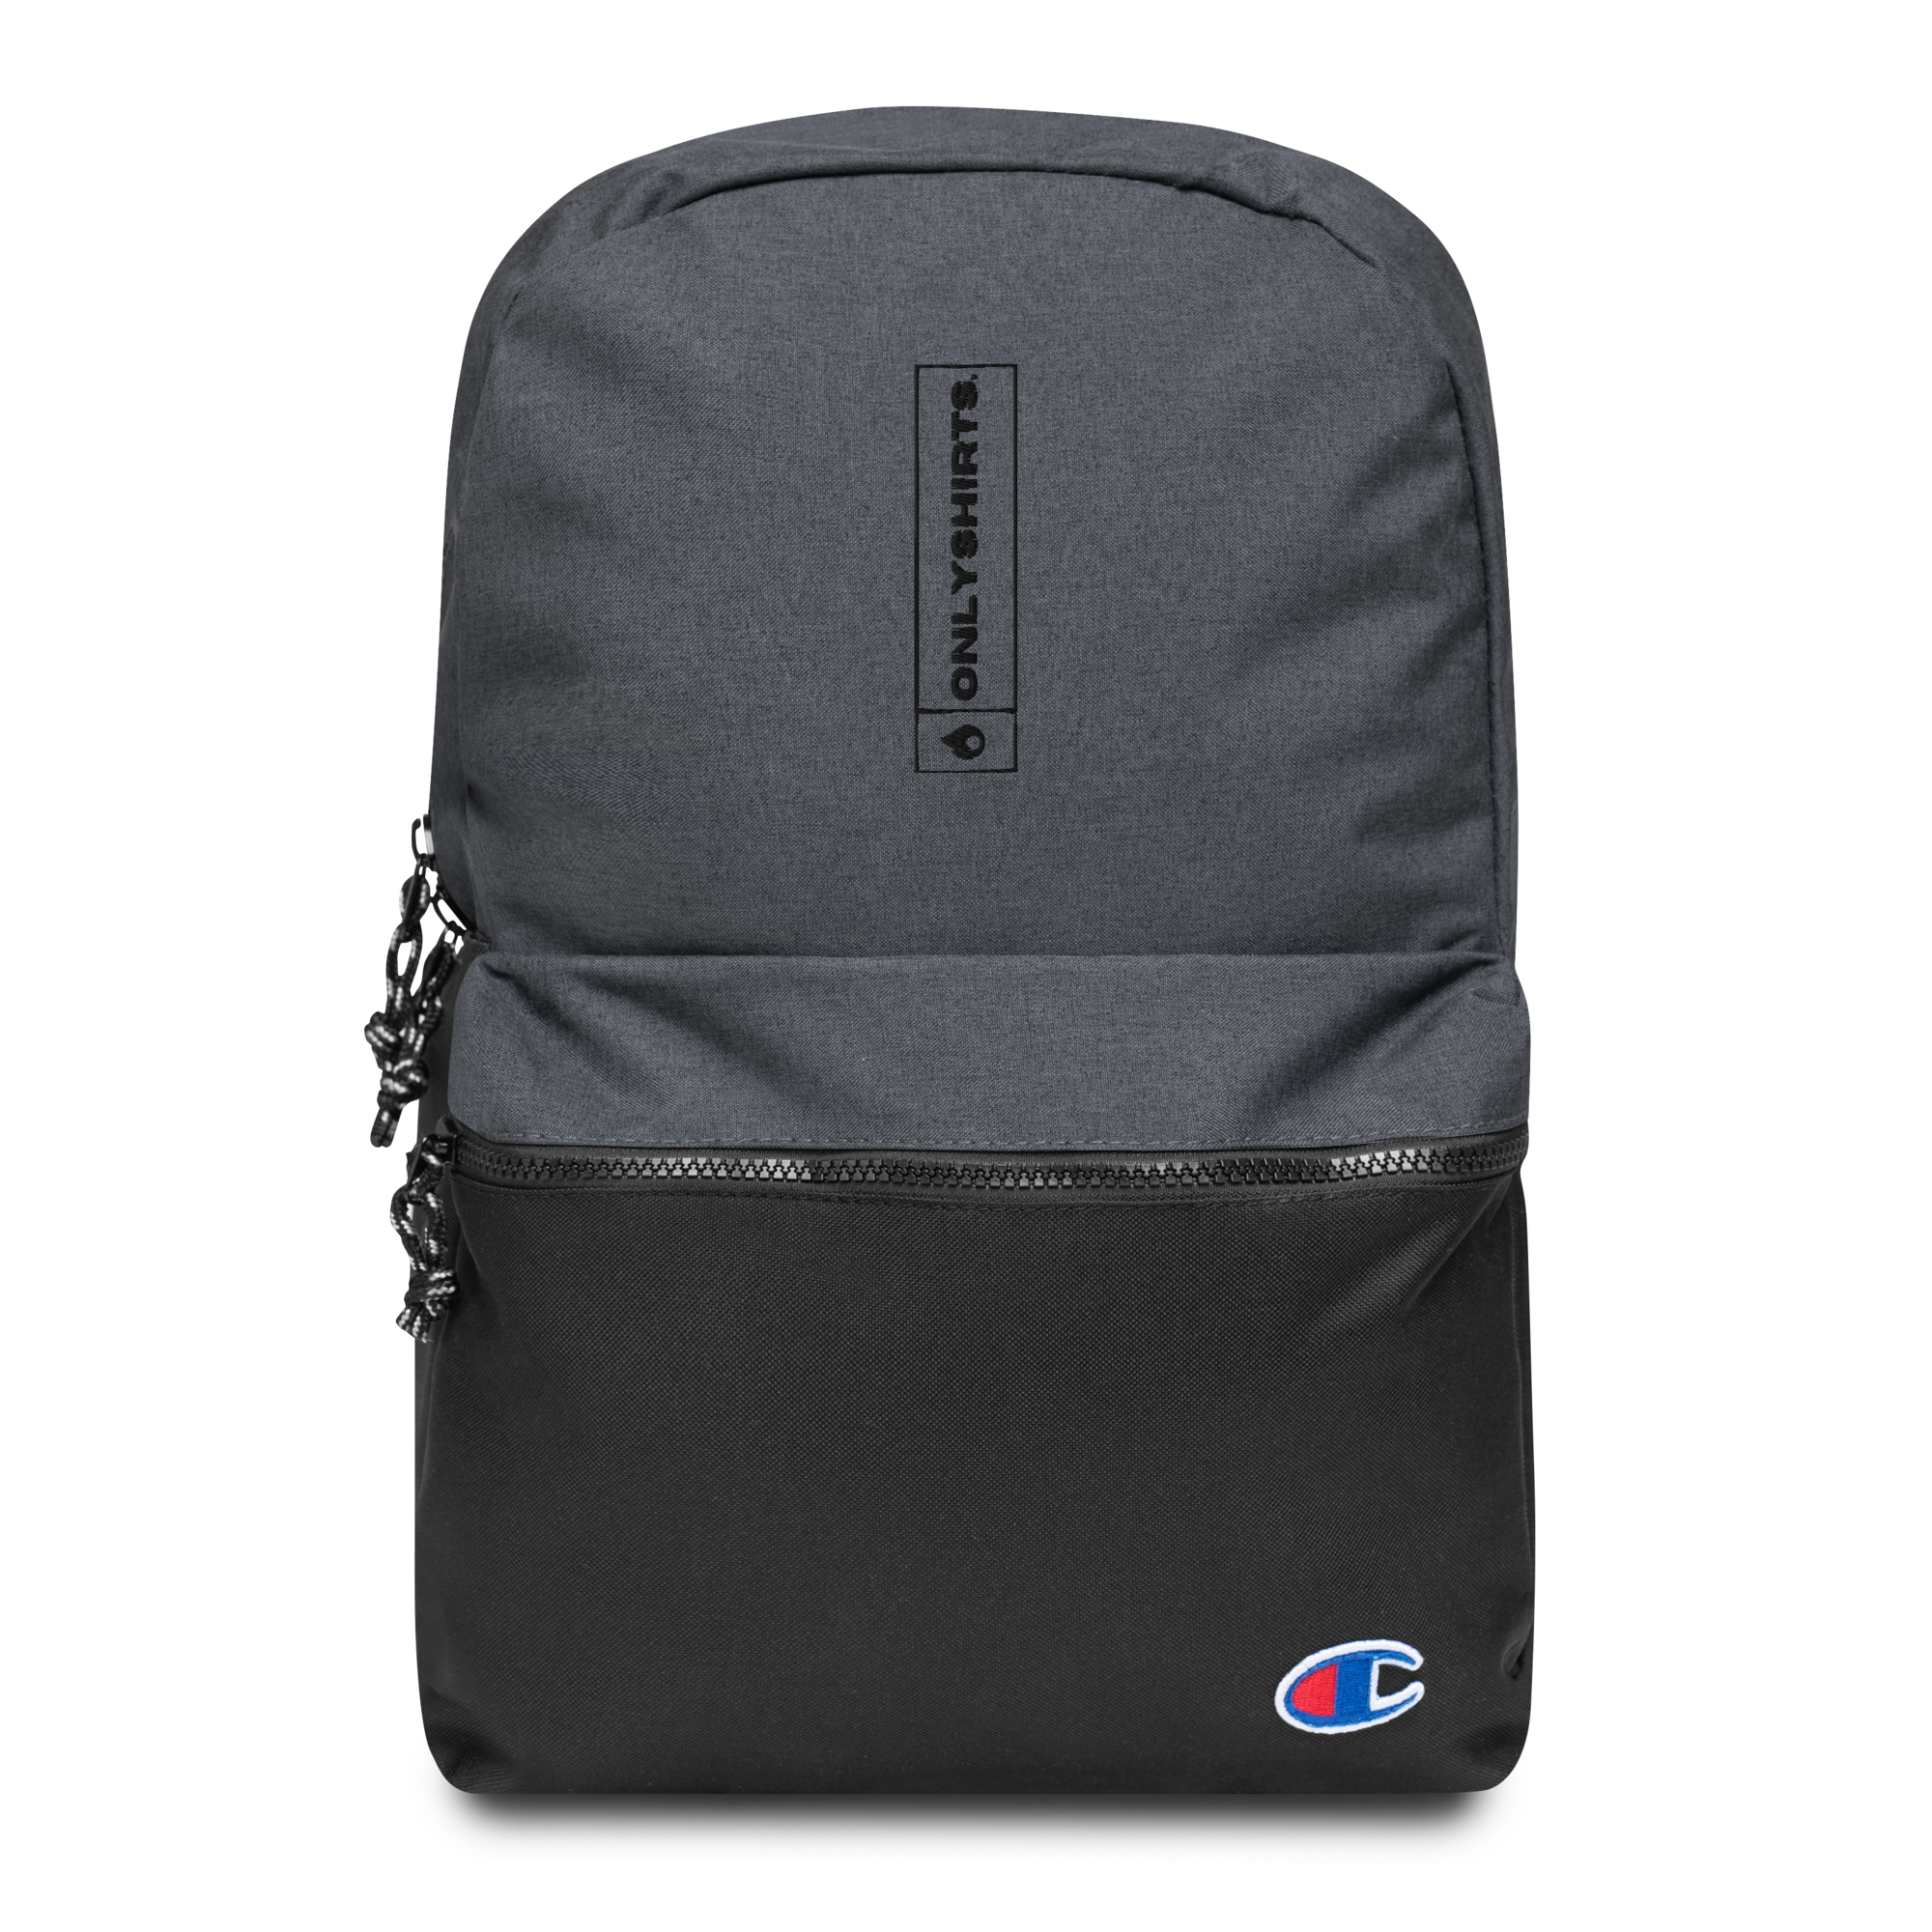 champion-backpack-heather-black-black-front-653c7ff6656da.png